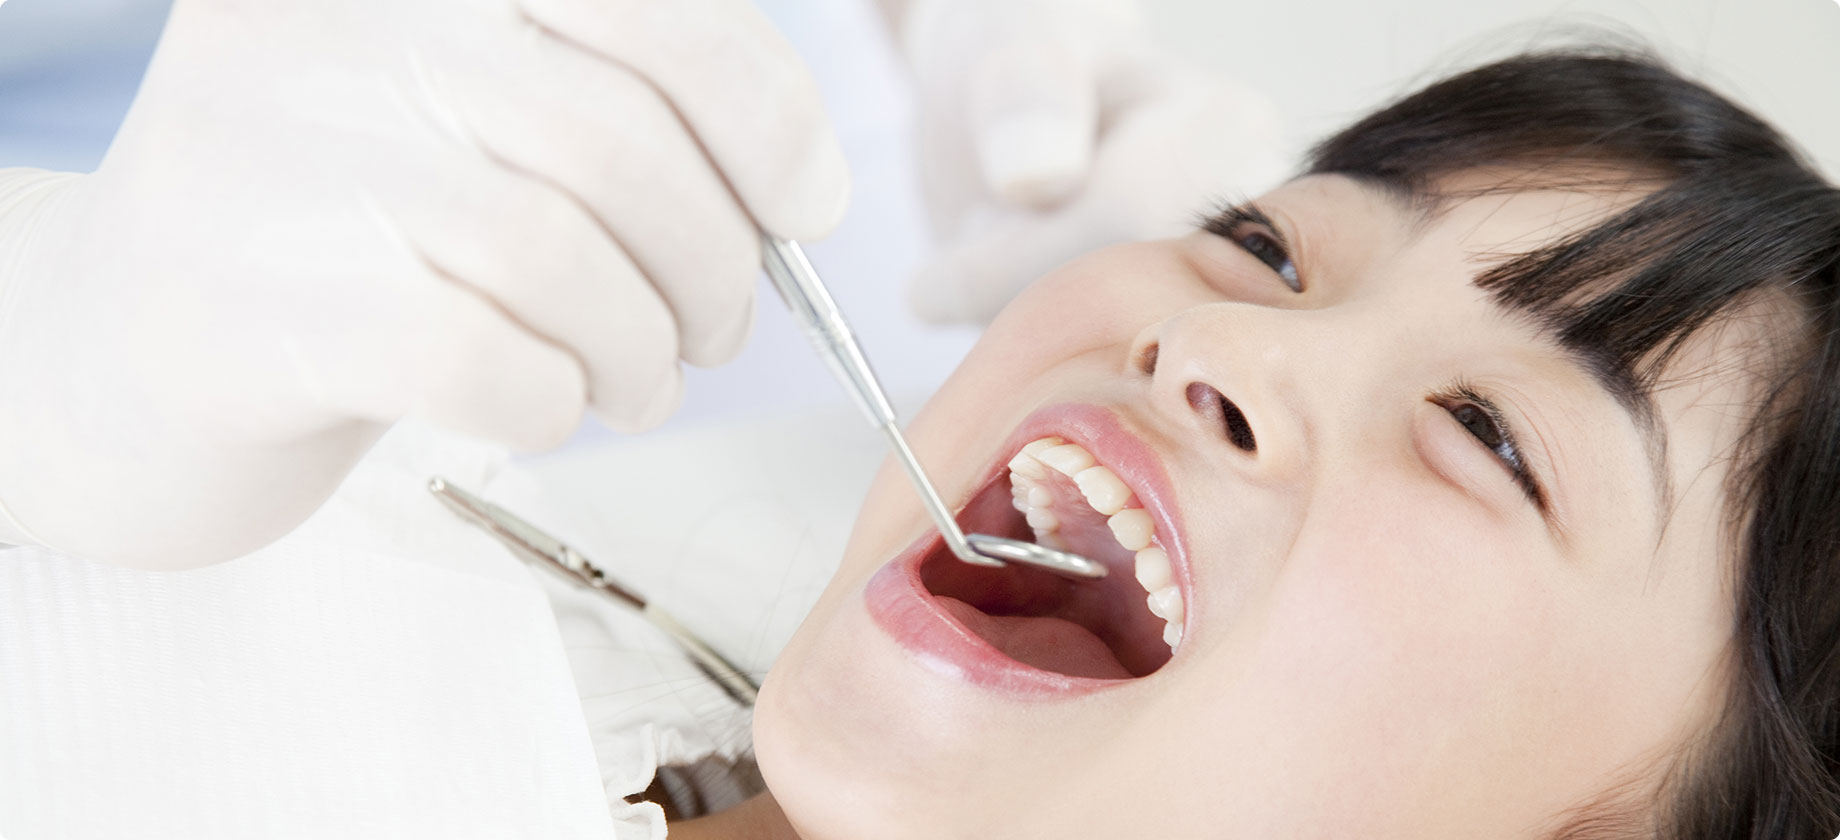 歯科医院による口腔ケアで感染症対策